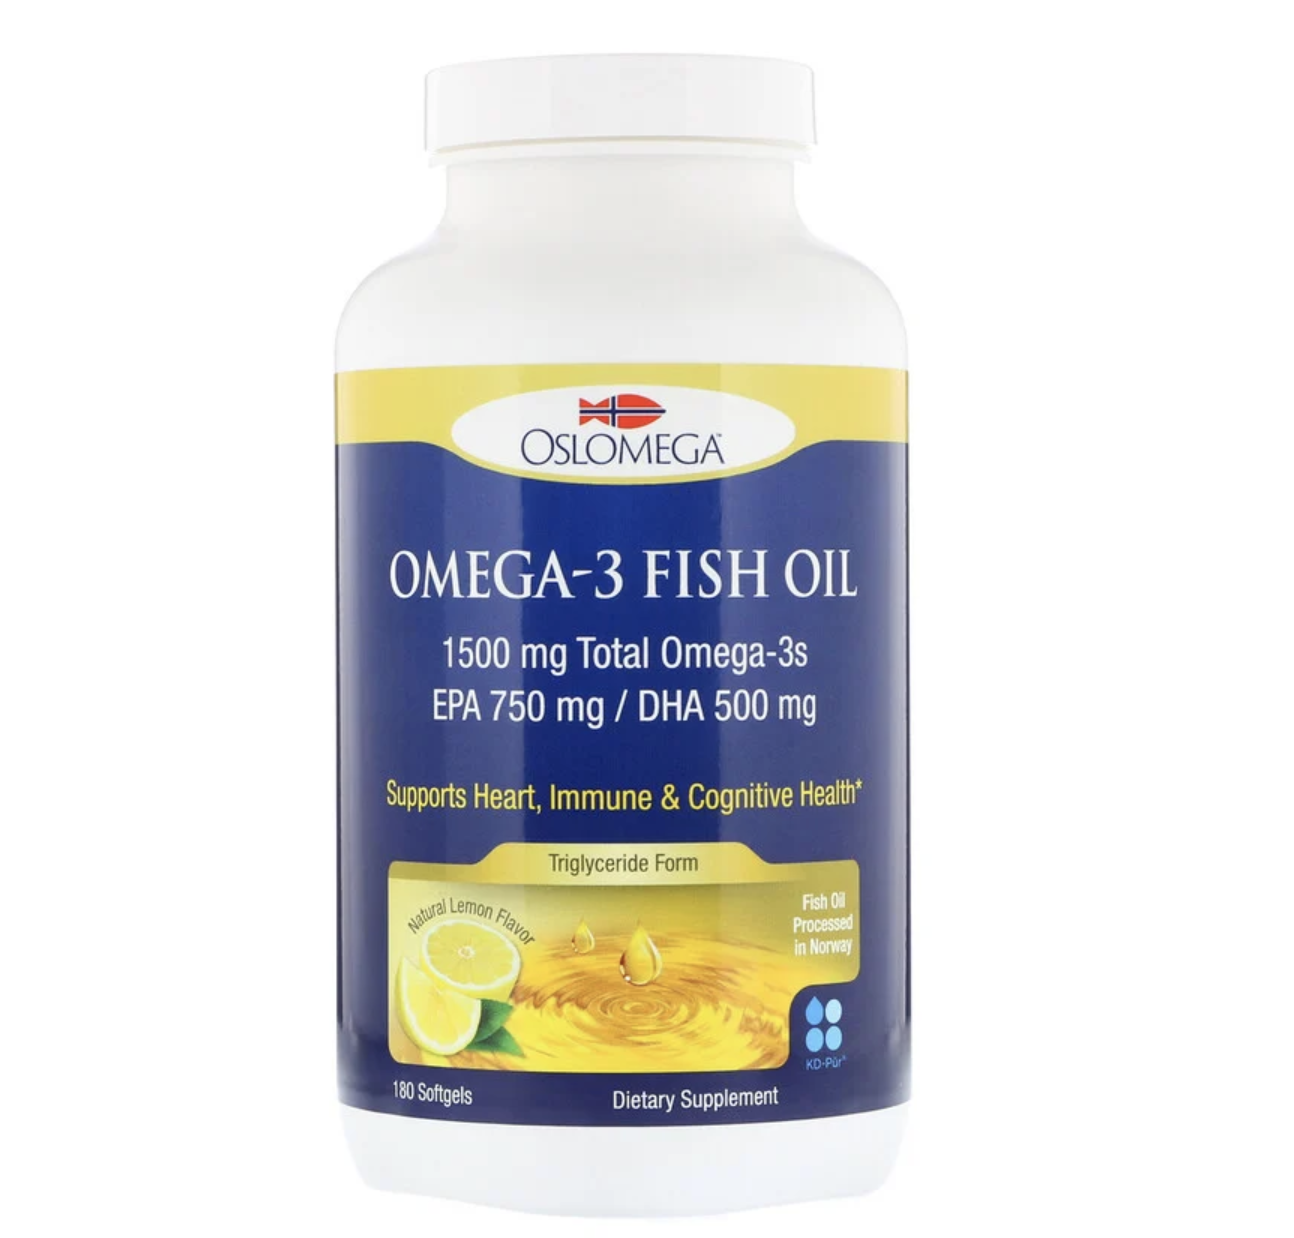 Oslomega Omega-3 Fish Oil